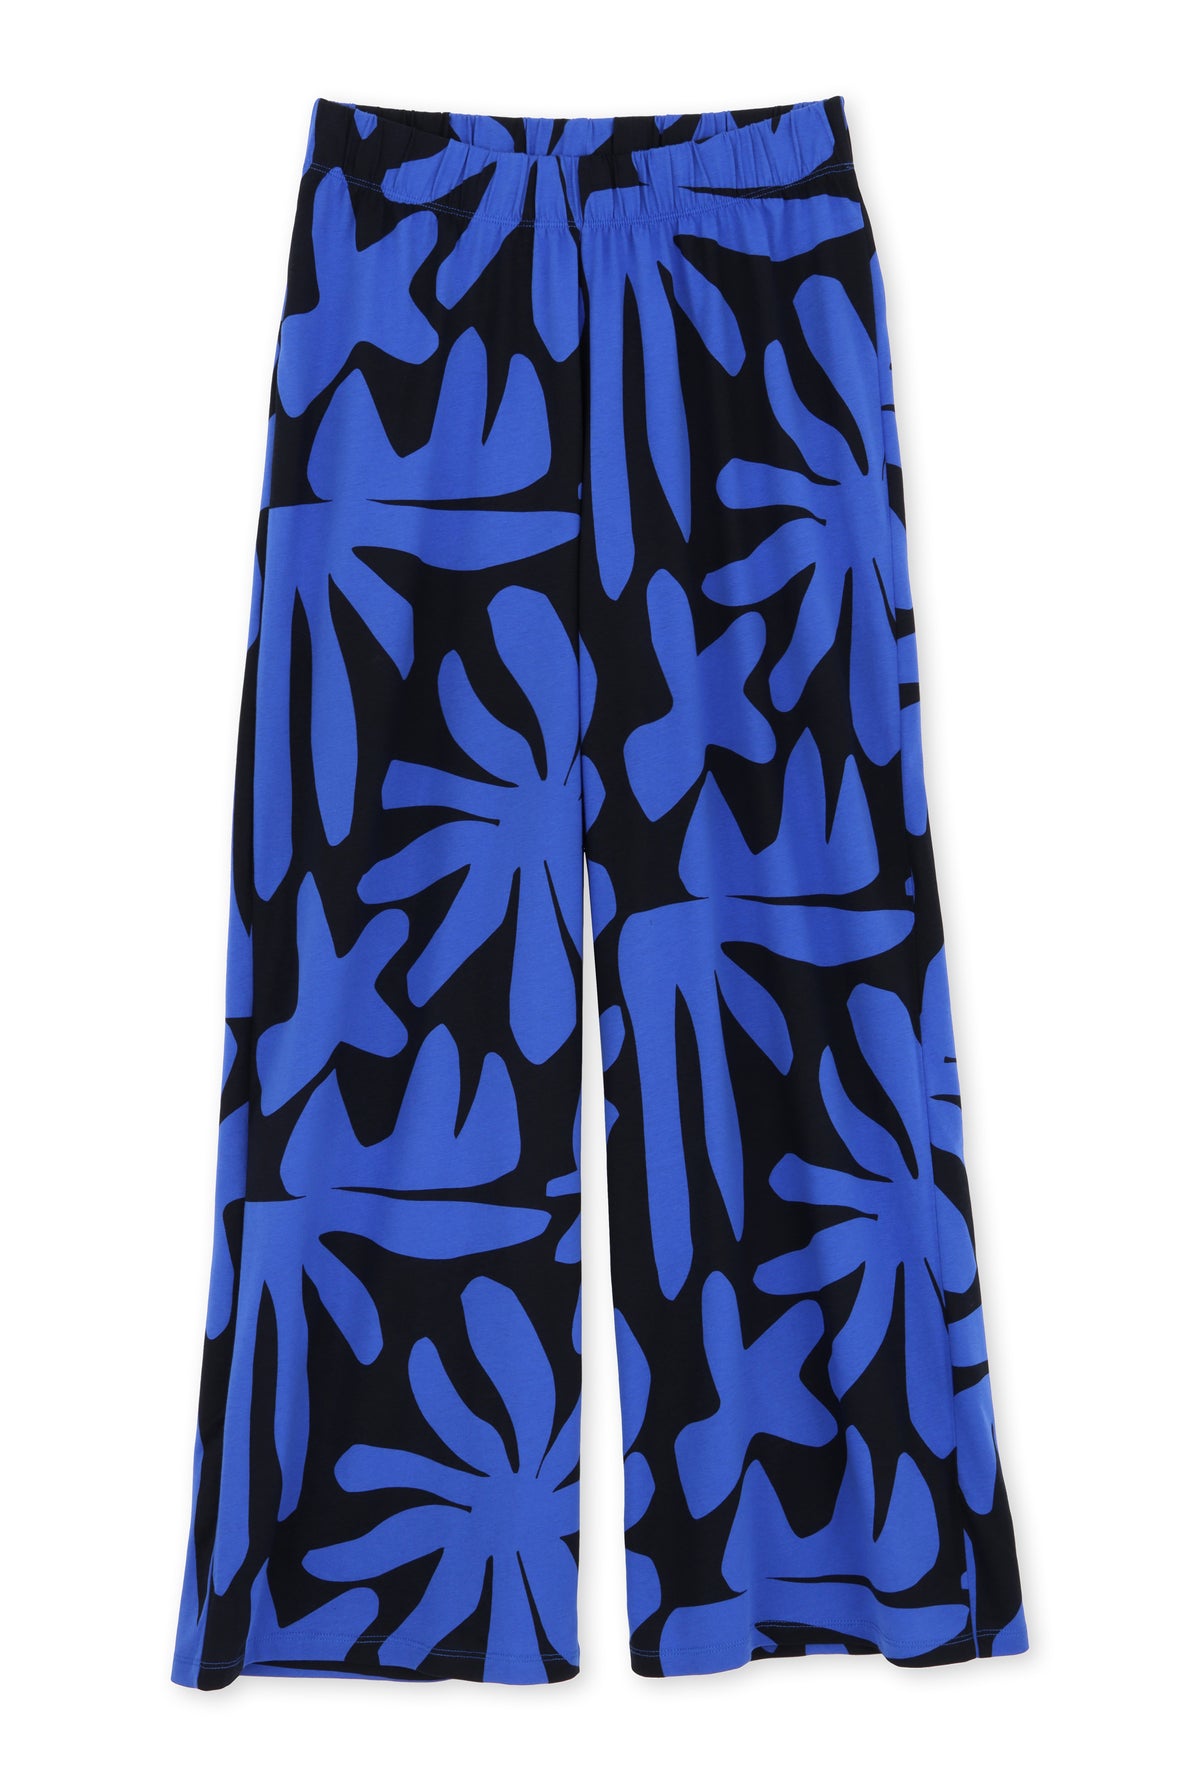 Pyjama long coton BIO - Végétal Bleu - Pyjamas longs - We Are Jolies